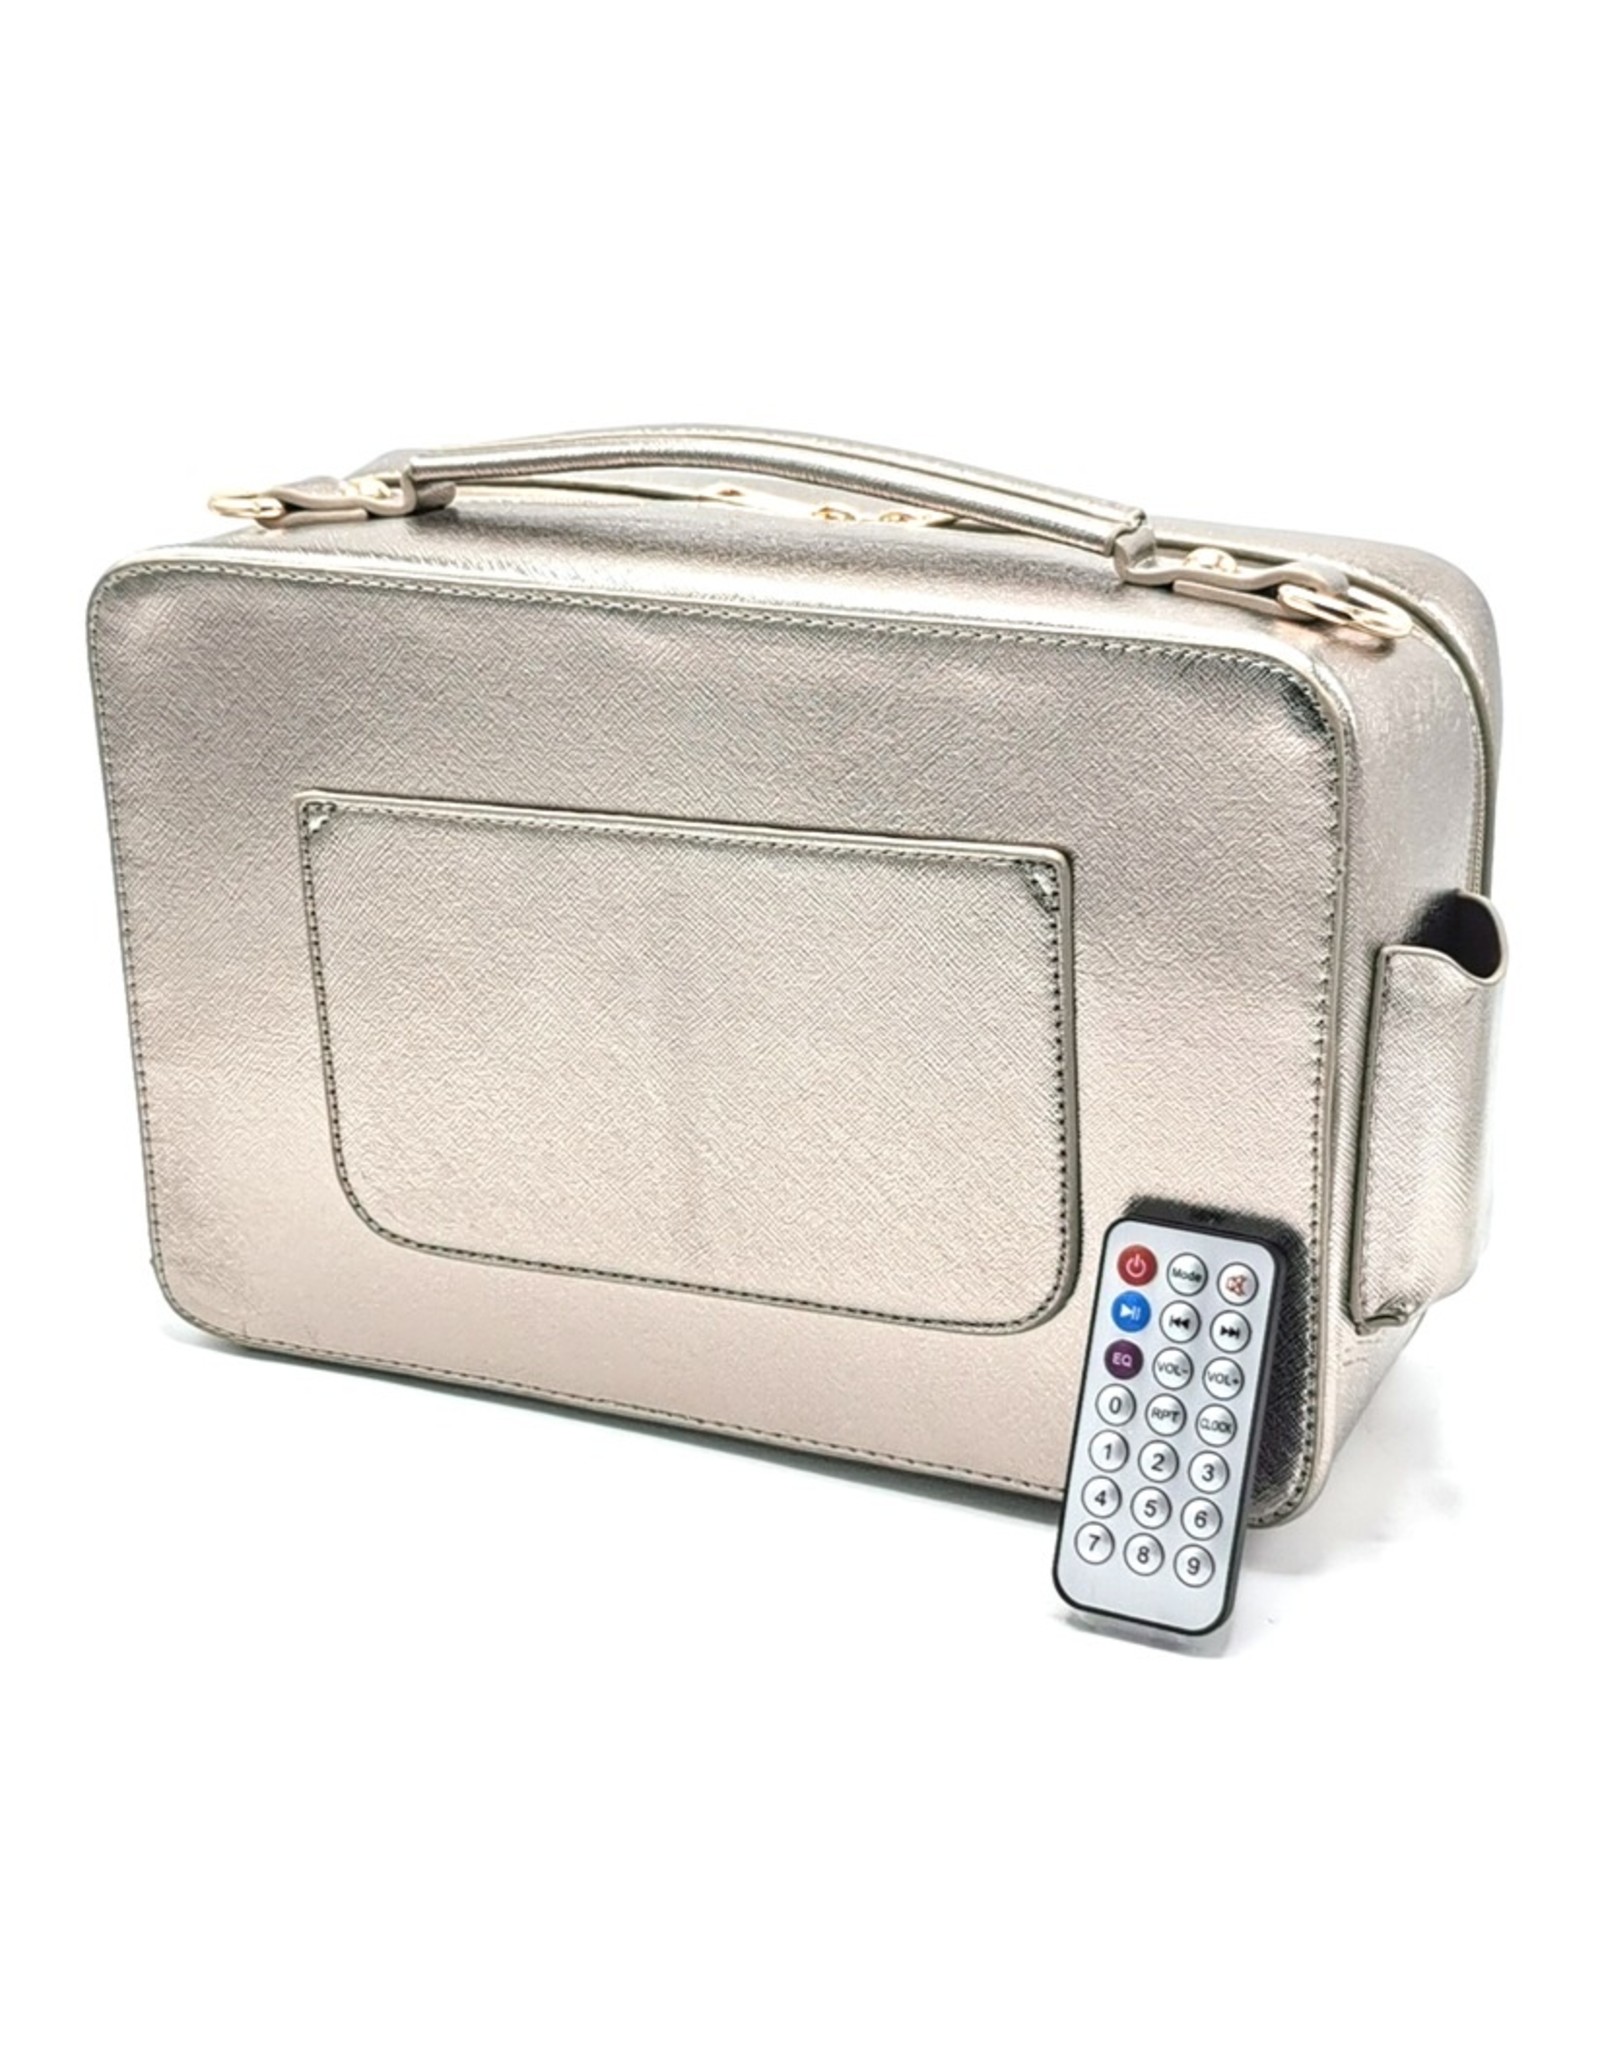 Magic Bags Fantasy bags and wallets - Boombox Radio Handbag with Real Radio silver